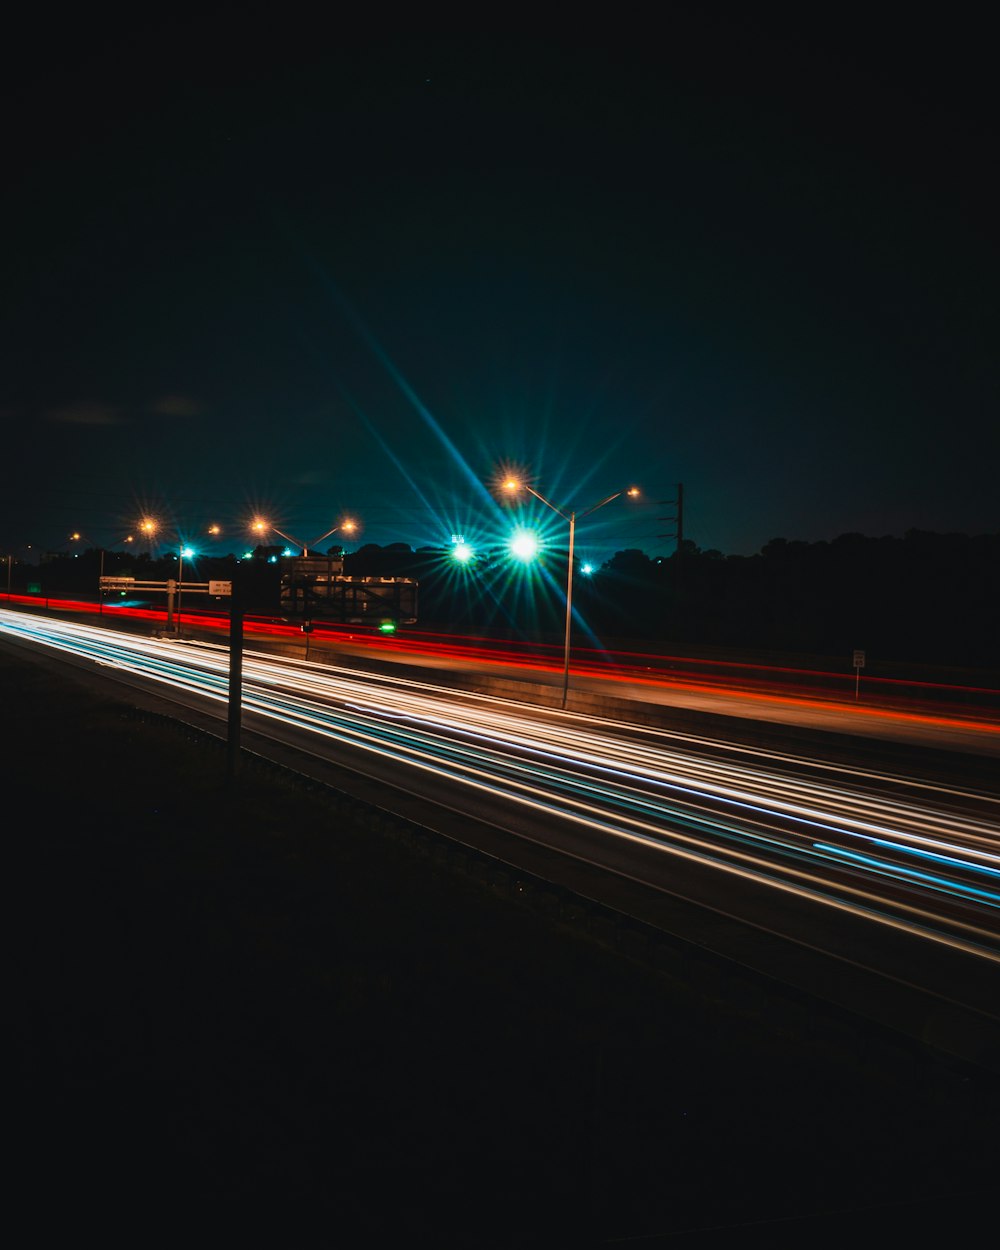 luz vermelha e verde na estrada durante a noite